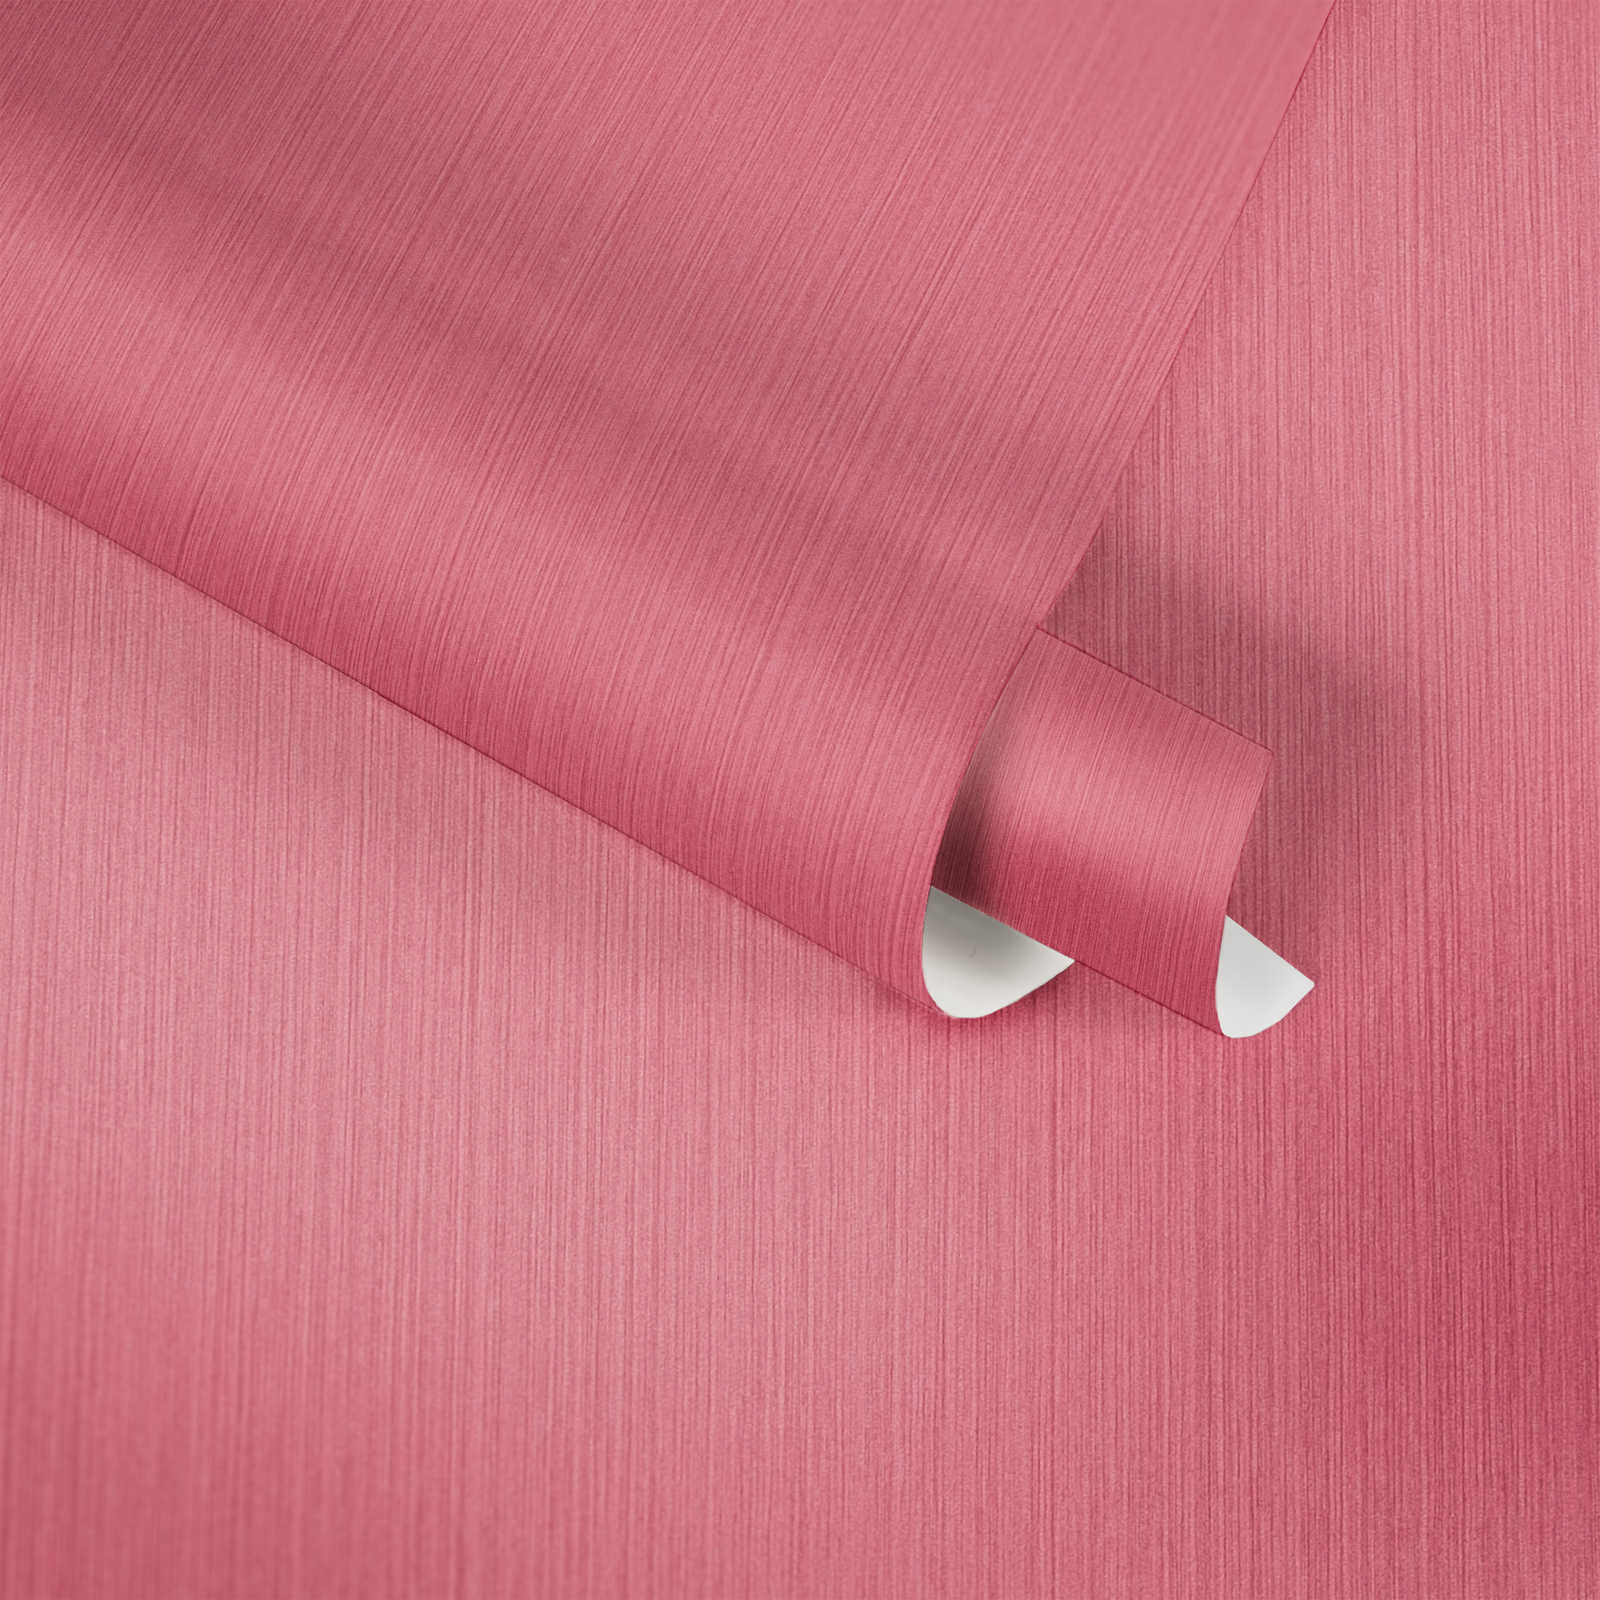             Papier peint rose avec effet textile chiné de MICHALSKY
        